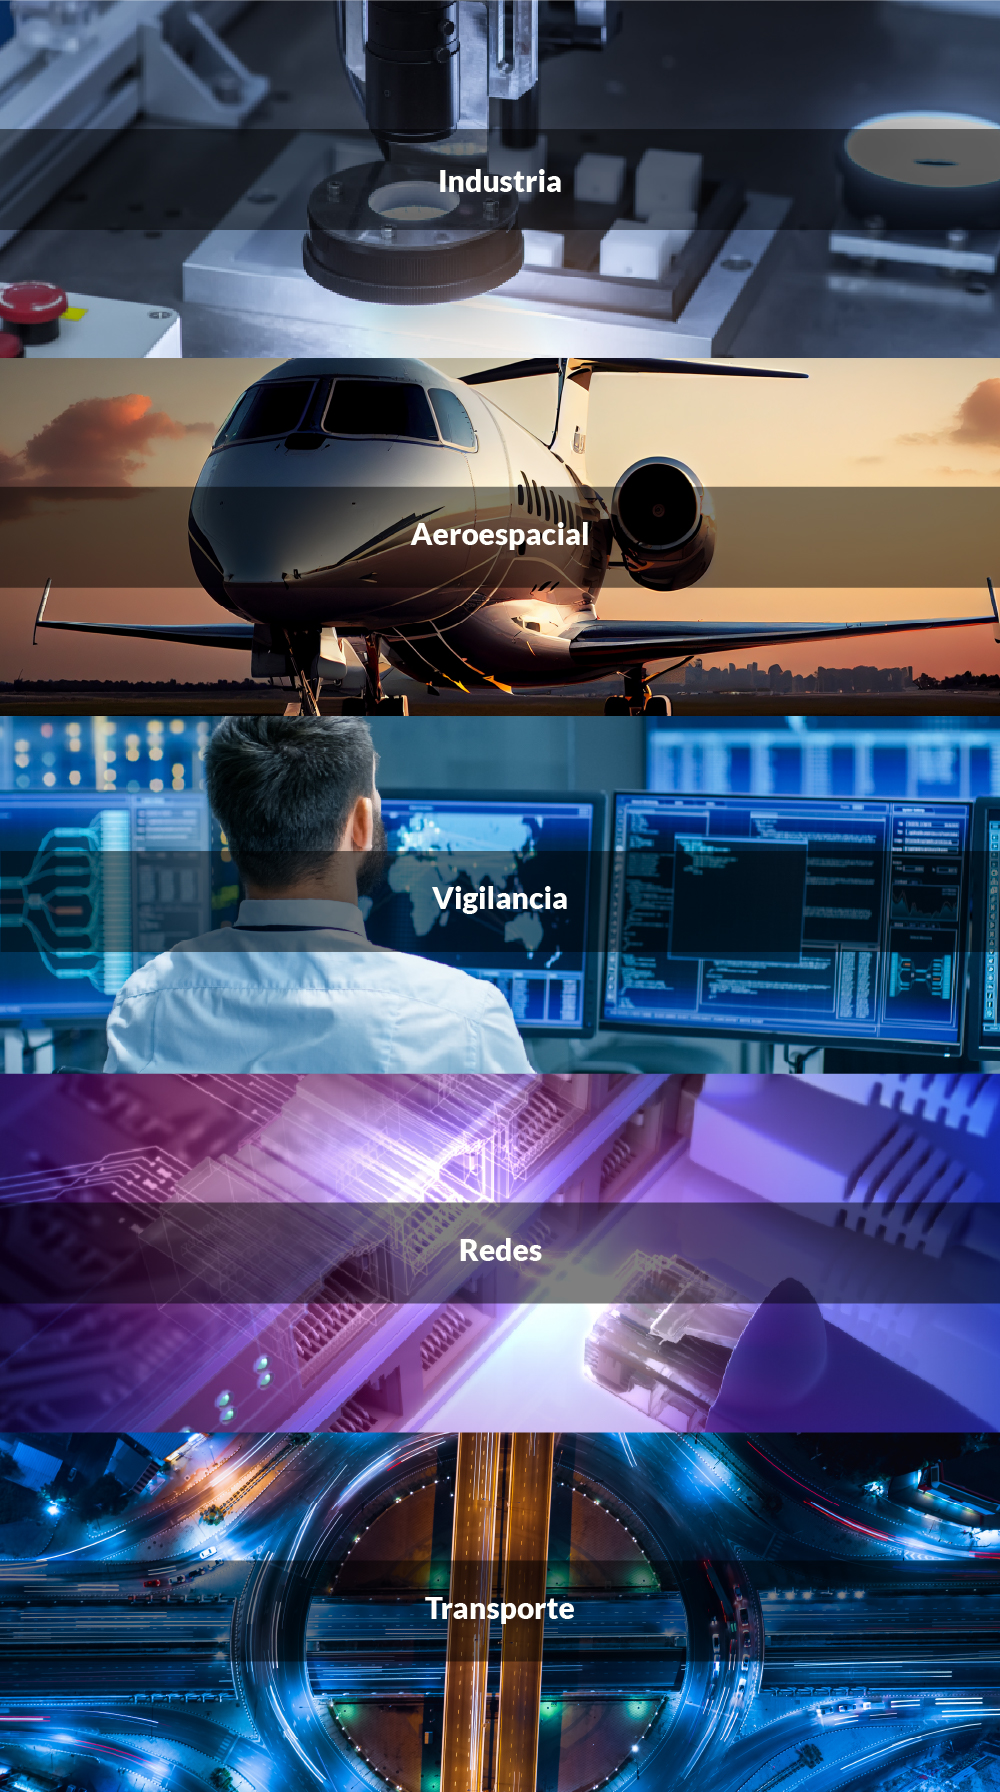 Industria / Aeroespacial / Vigilancia / Redes / Transporte